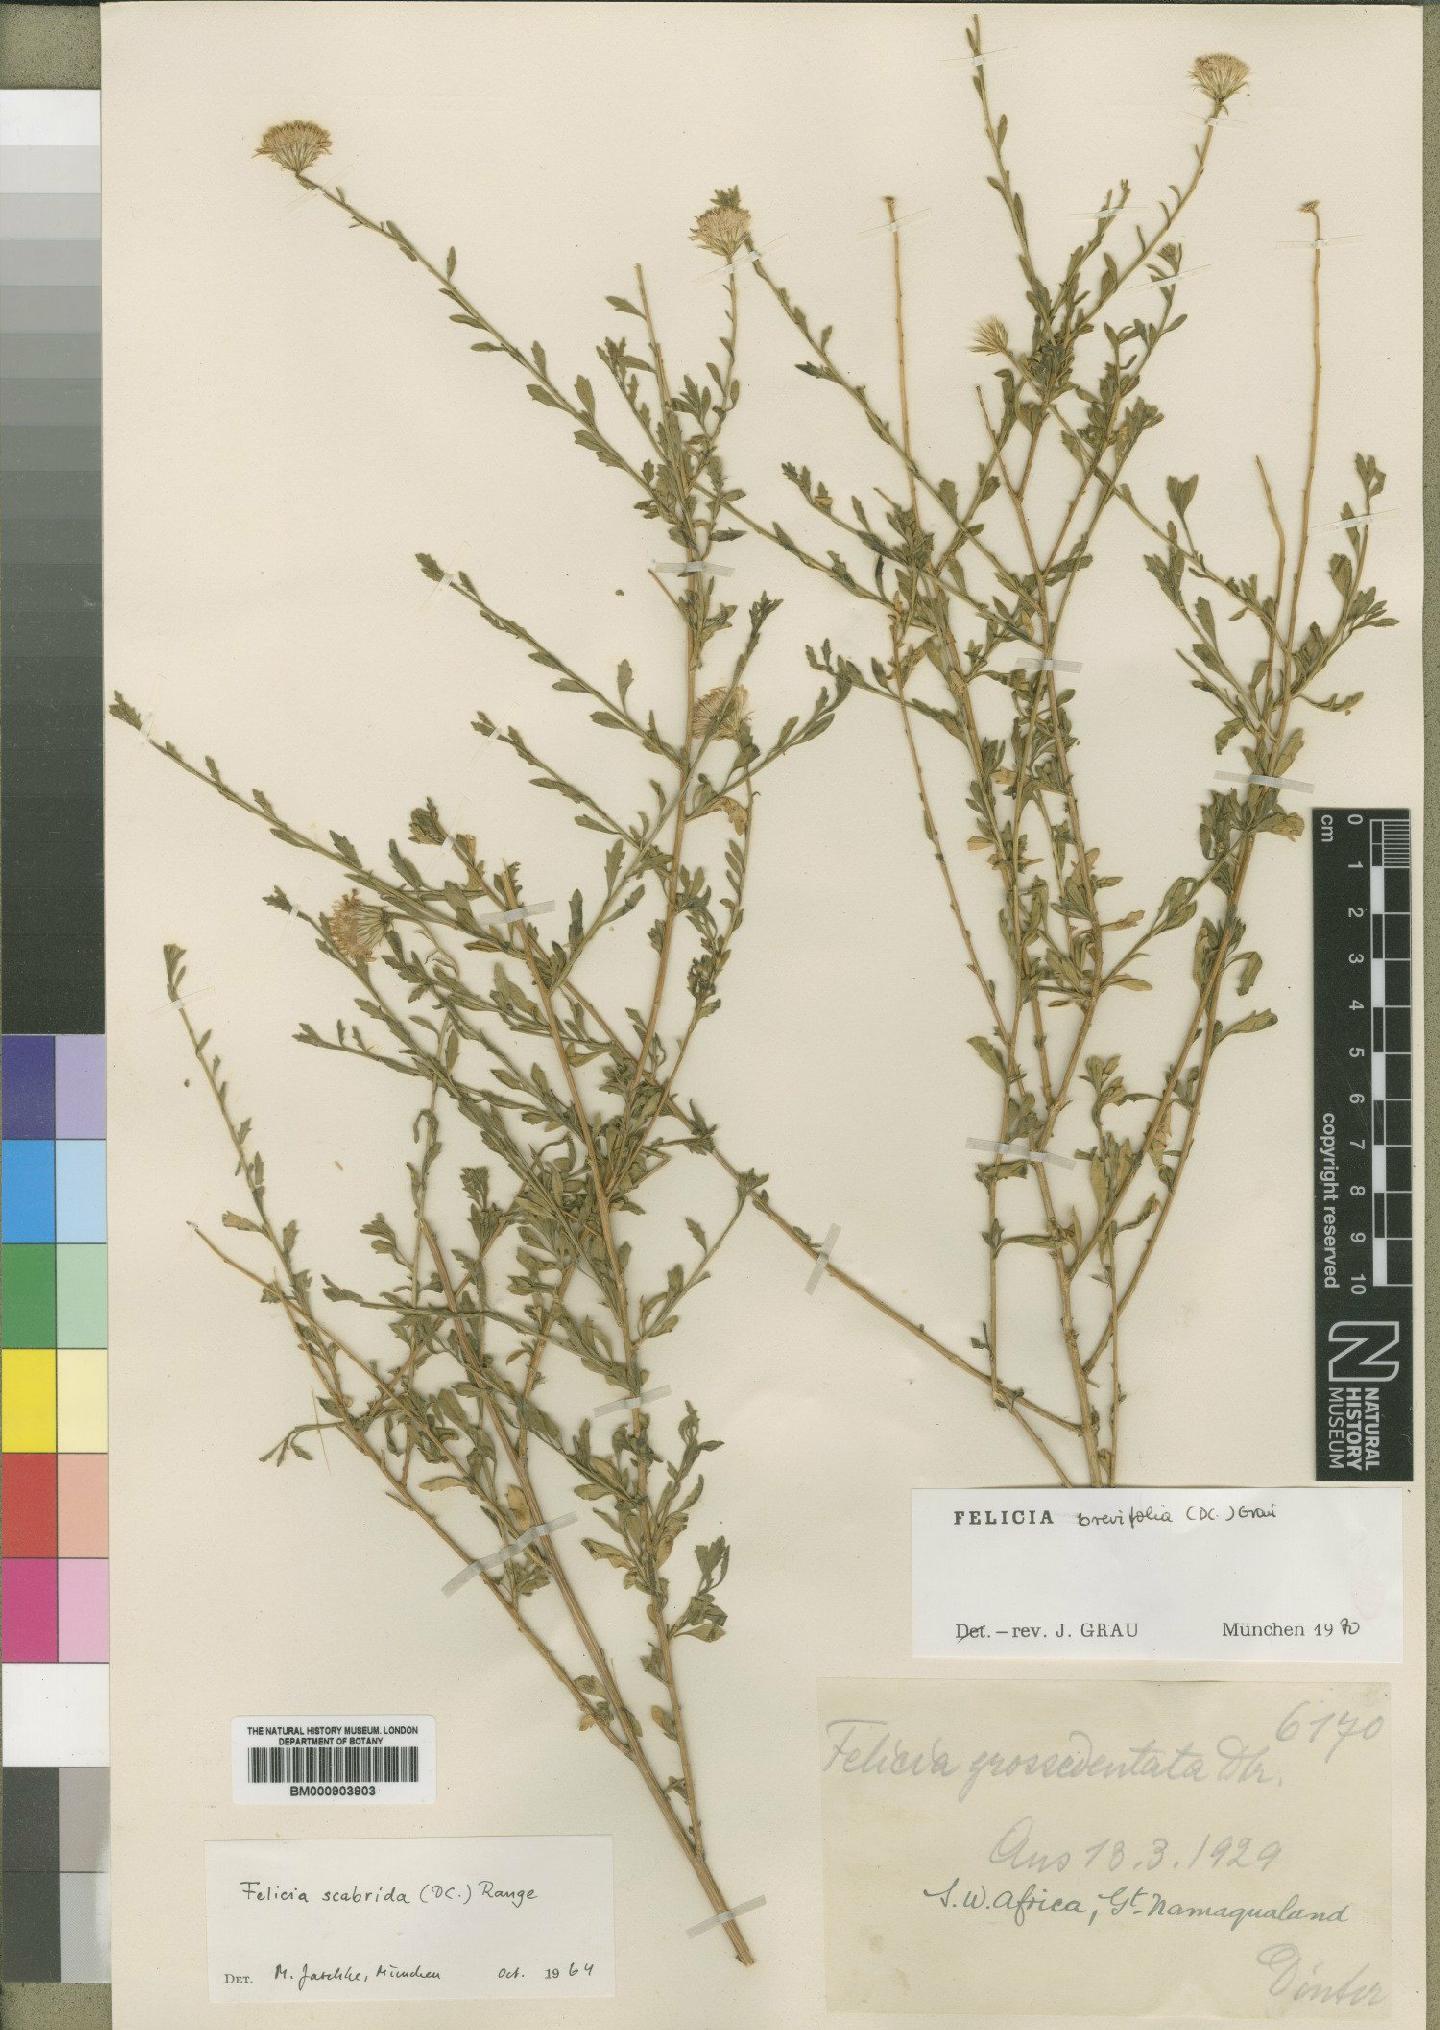 To NHMUK collection (Felicia brevifolia (DC.) Grau; Type; NHMUK:ecatalogue:4528951)